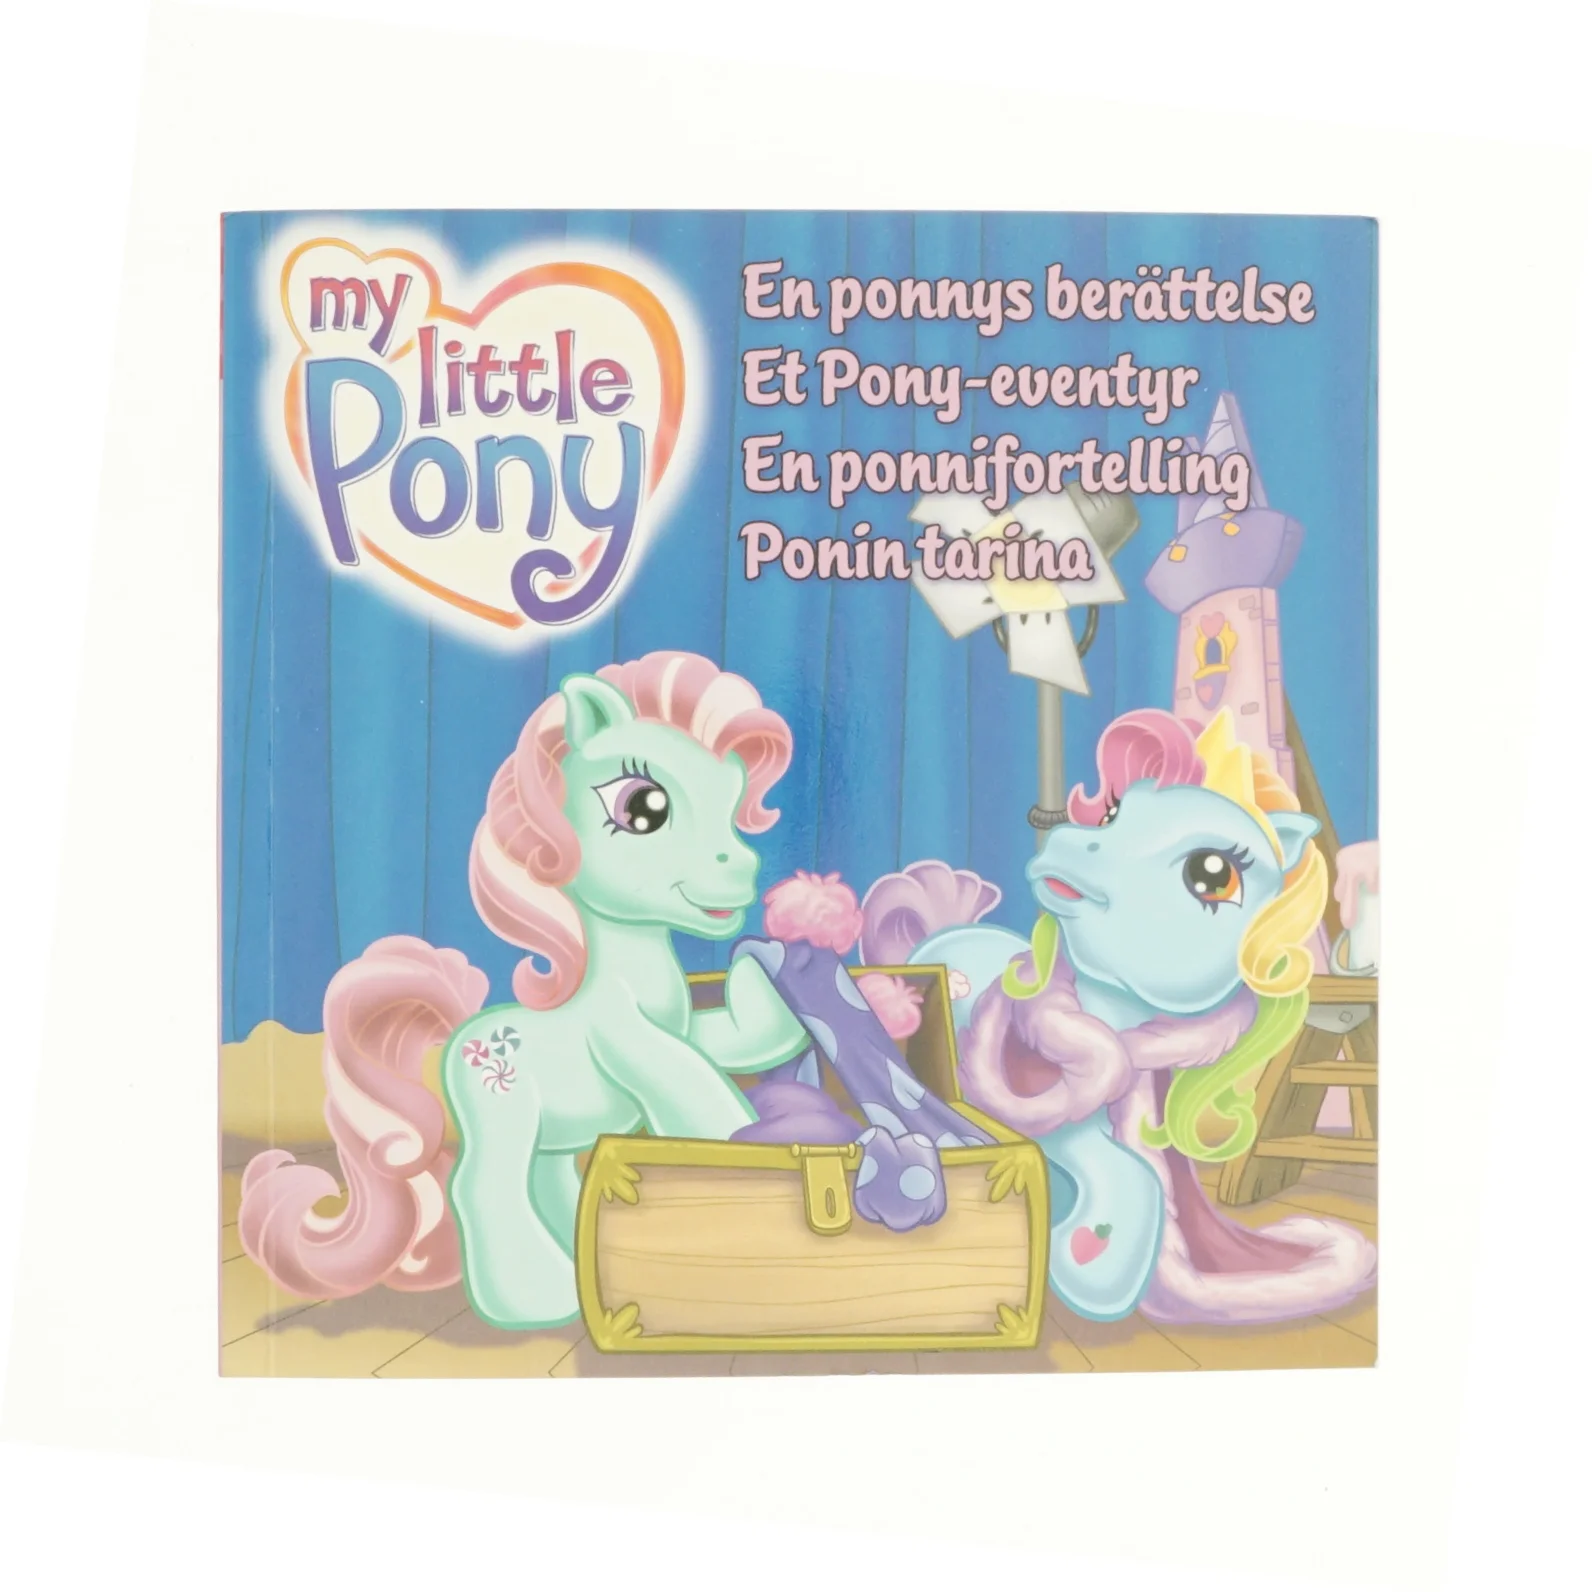 Derivation Spytte ud større My Little Pony | Orderly.shop